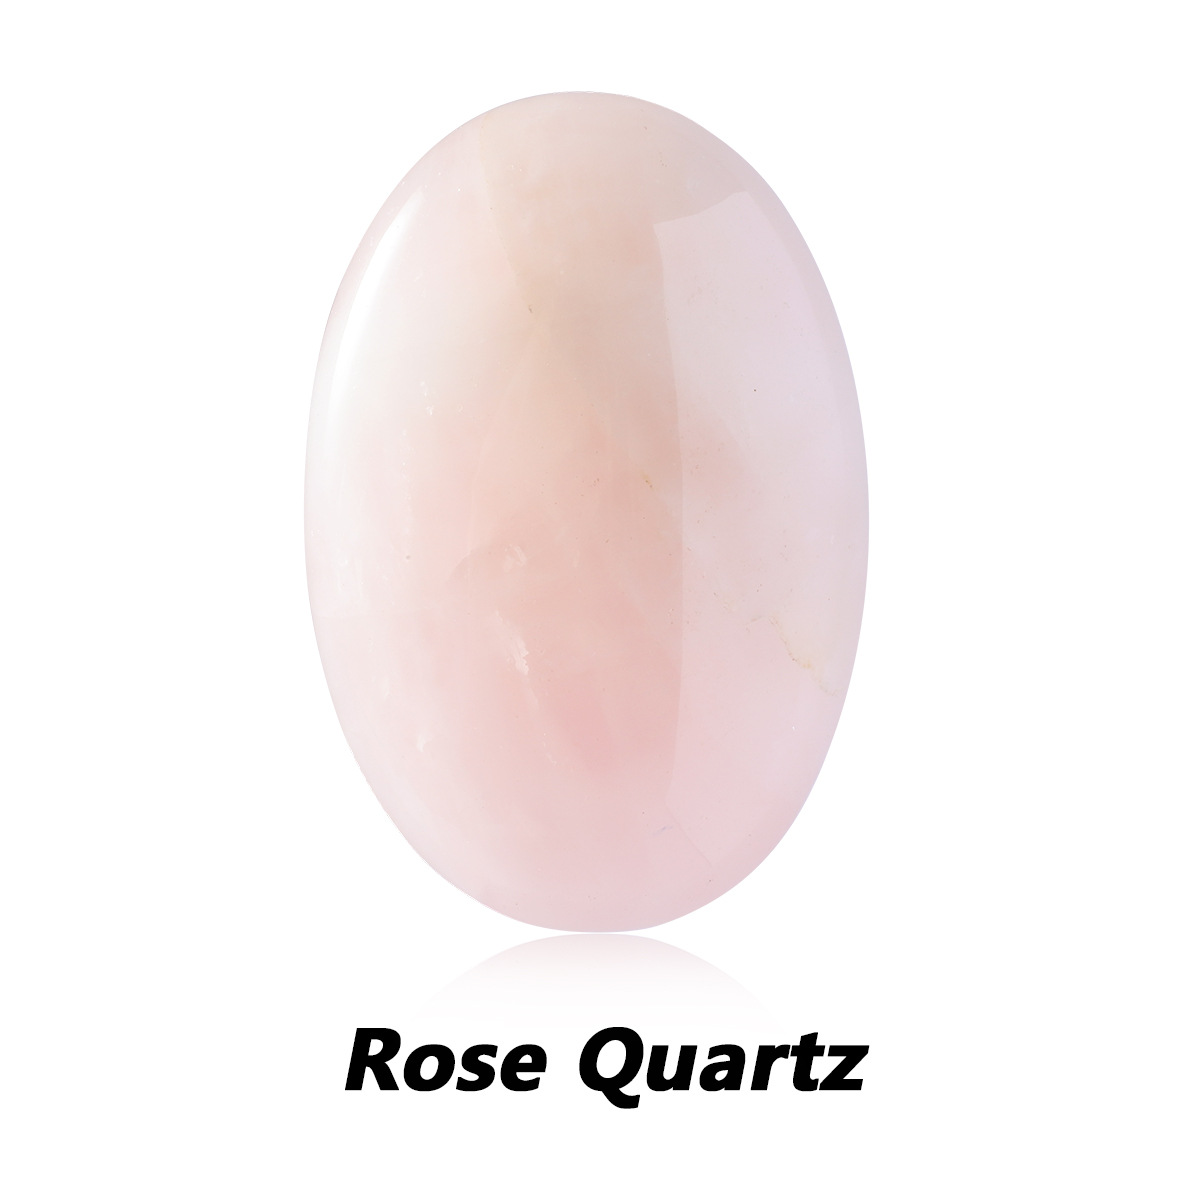 1 Quartz Rose